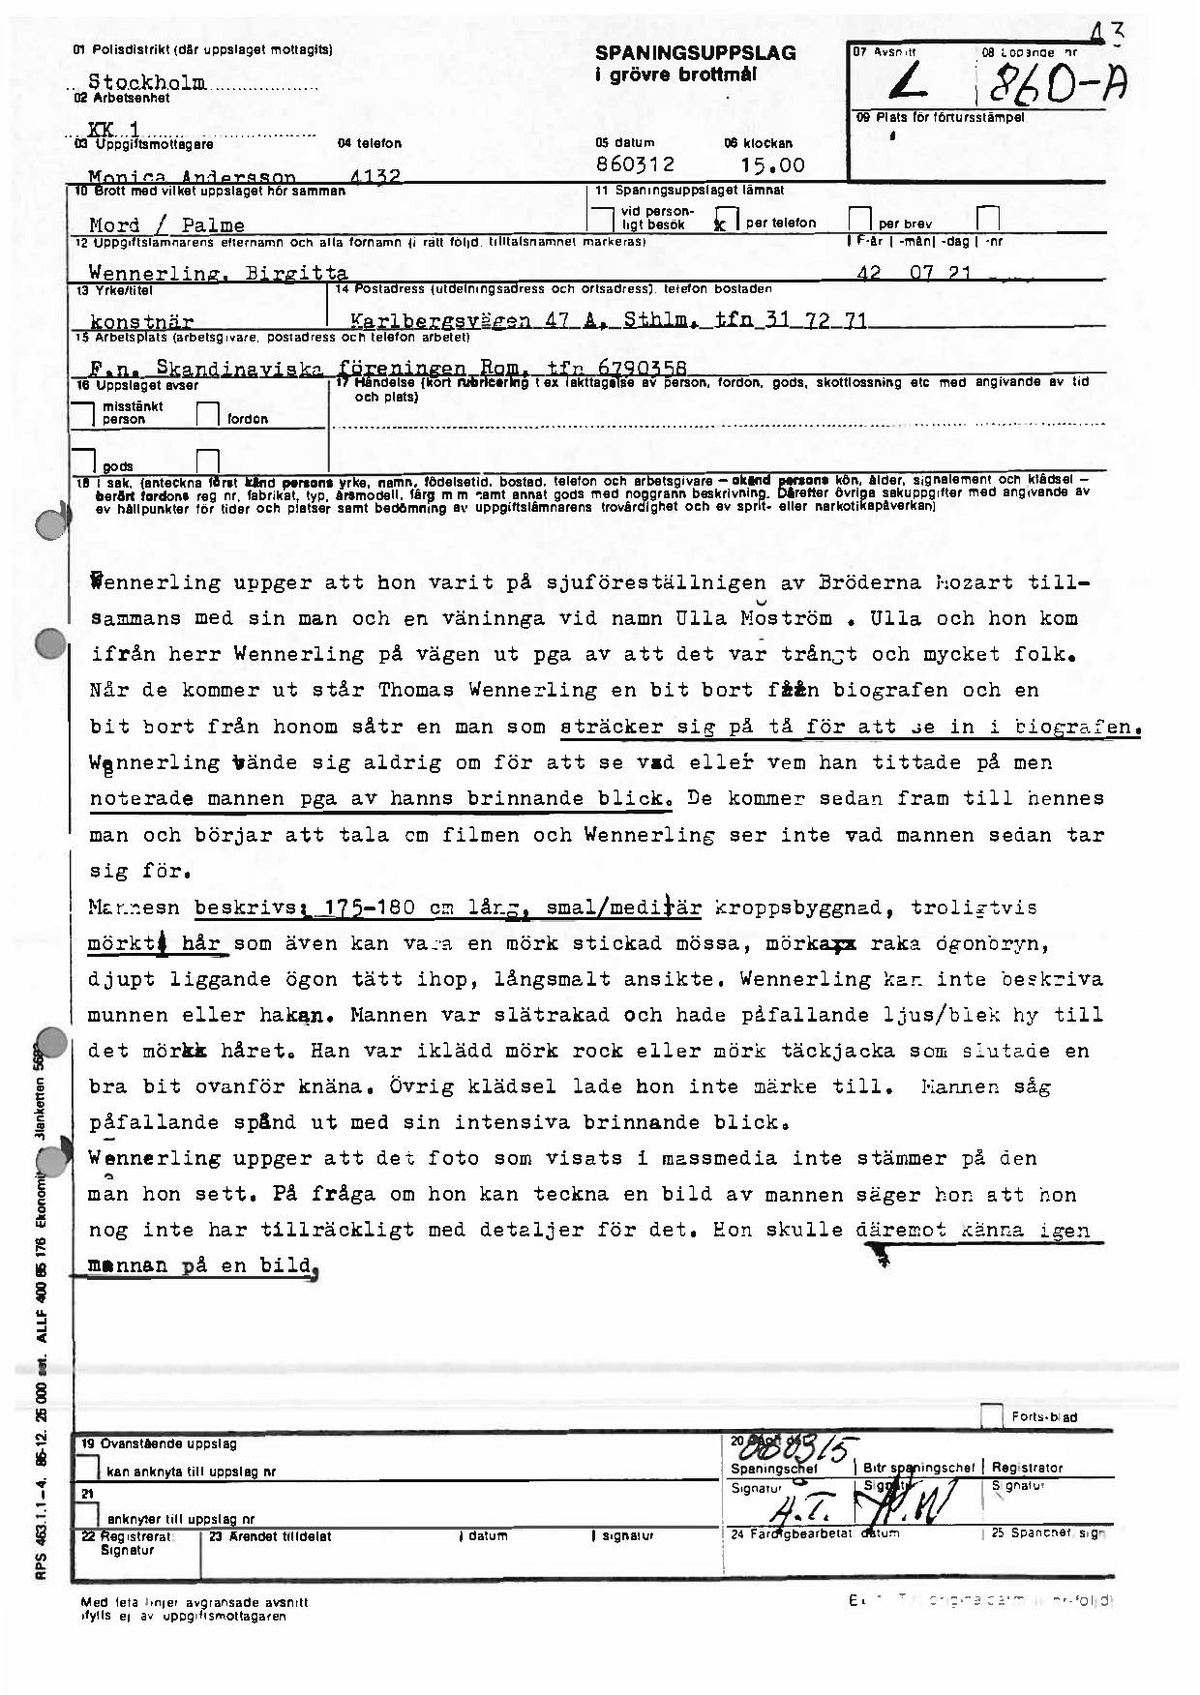 Pol-1986-03-12 1500 L860-00-A Birgitta Wennerling om misstänkt man utanför Grand.pdf